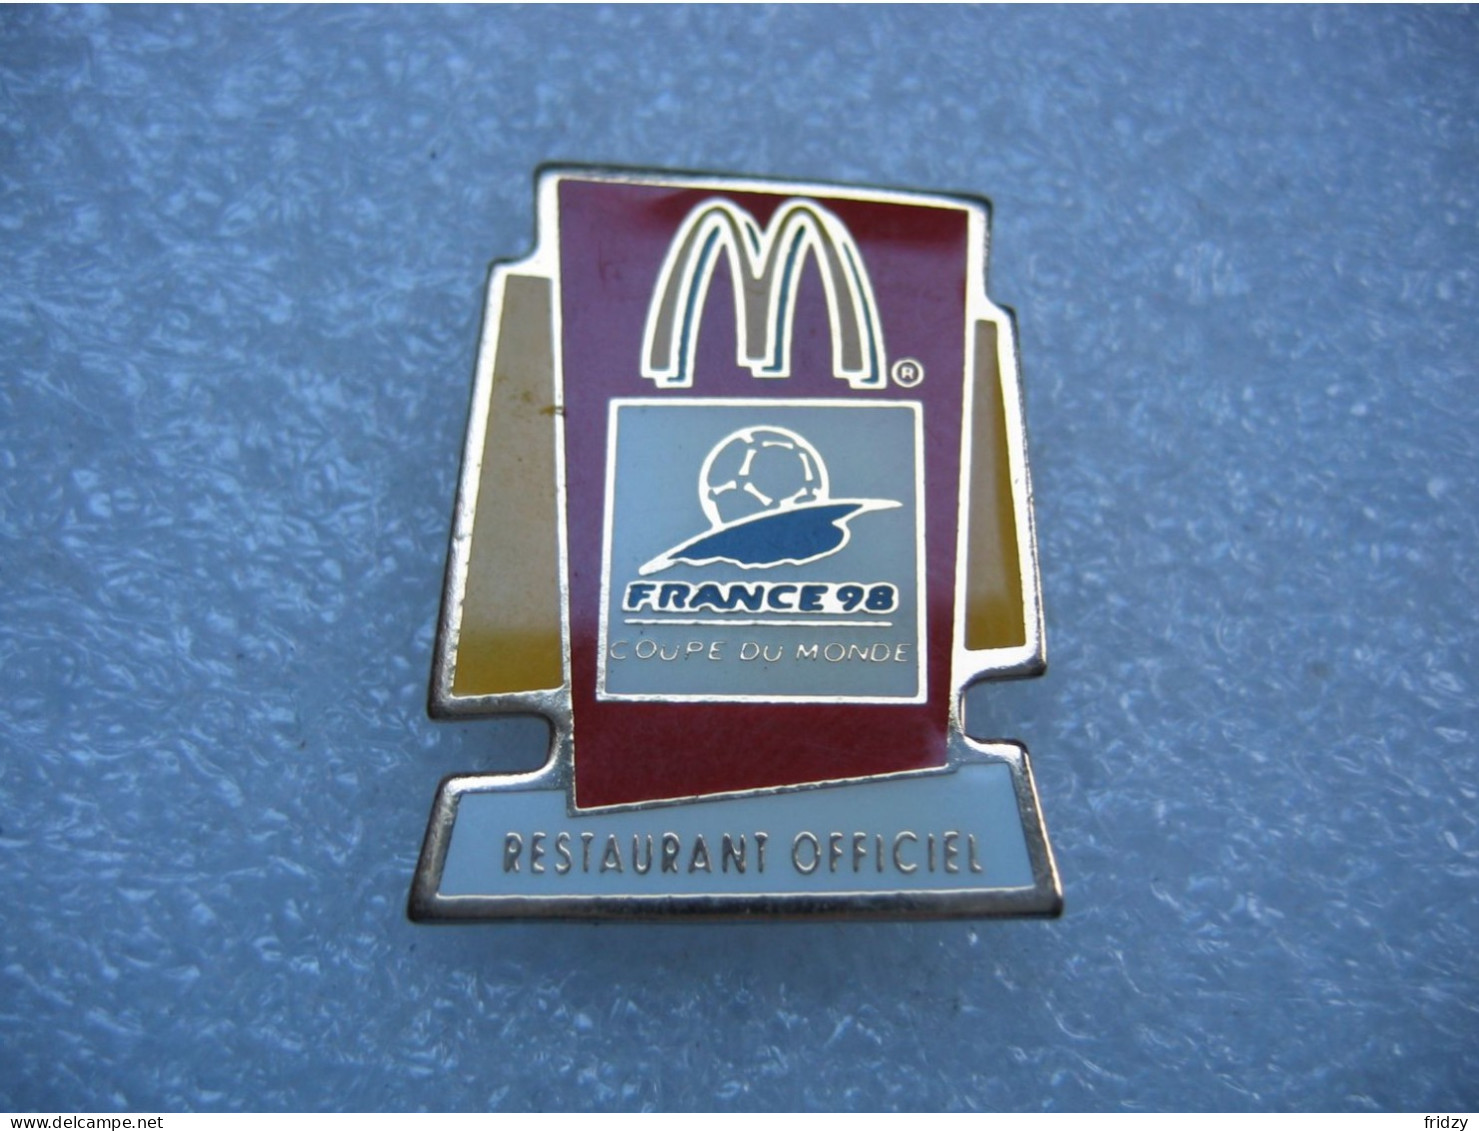 Pin's Mac Donald, Restaurant Officiel De La Coupe Du Monde France 98 - McDonald's